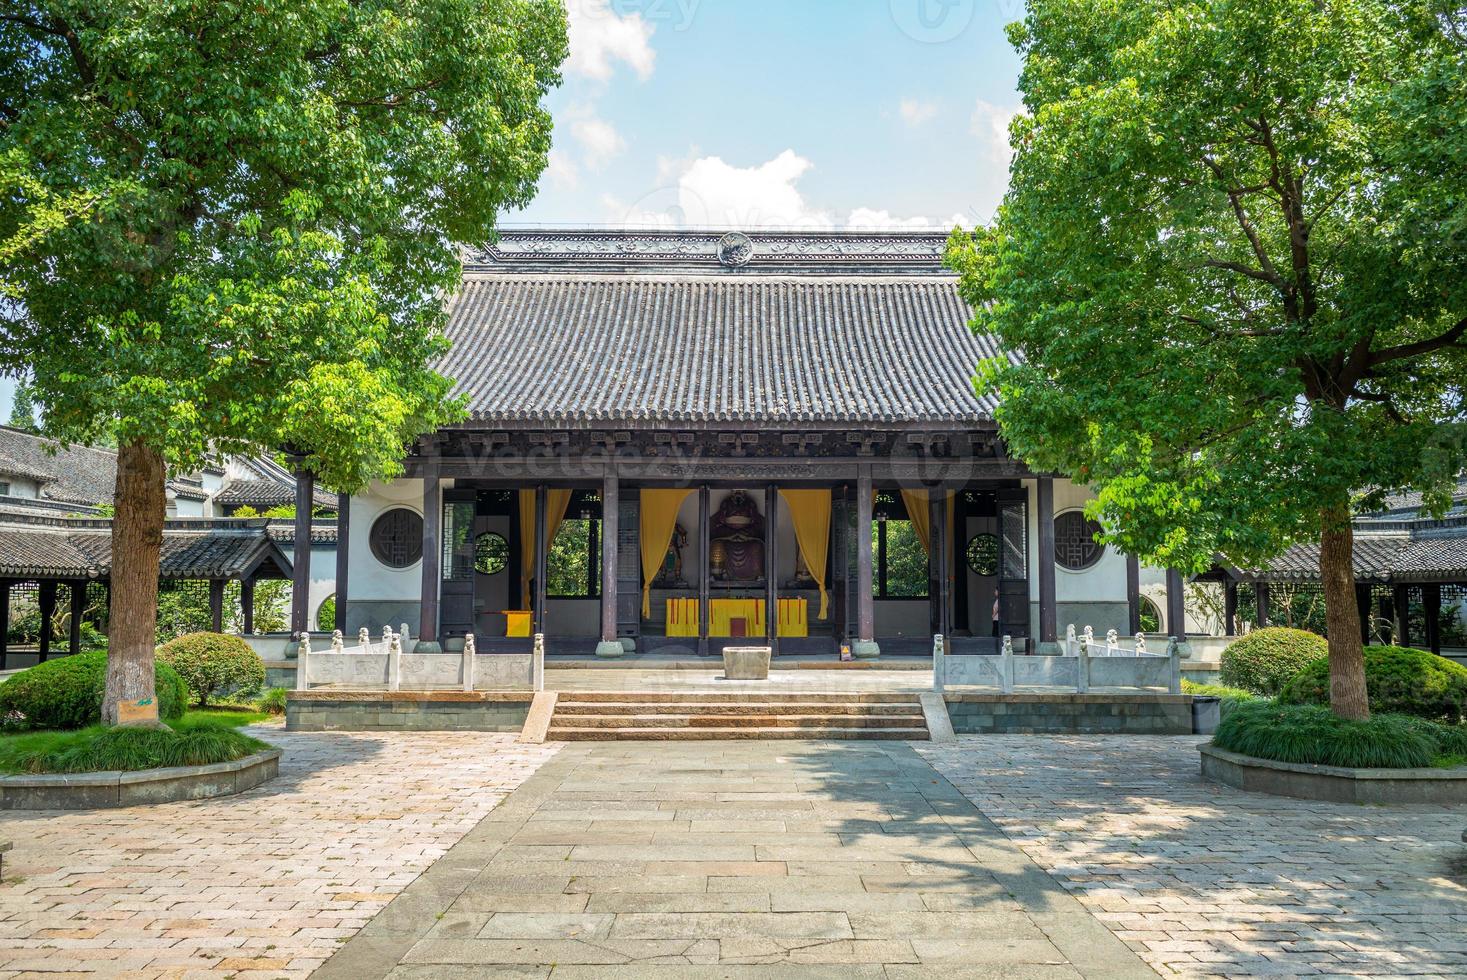 vista de la fachada del templo del general wu en wuzhen foto